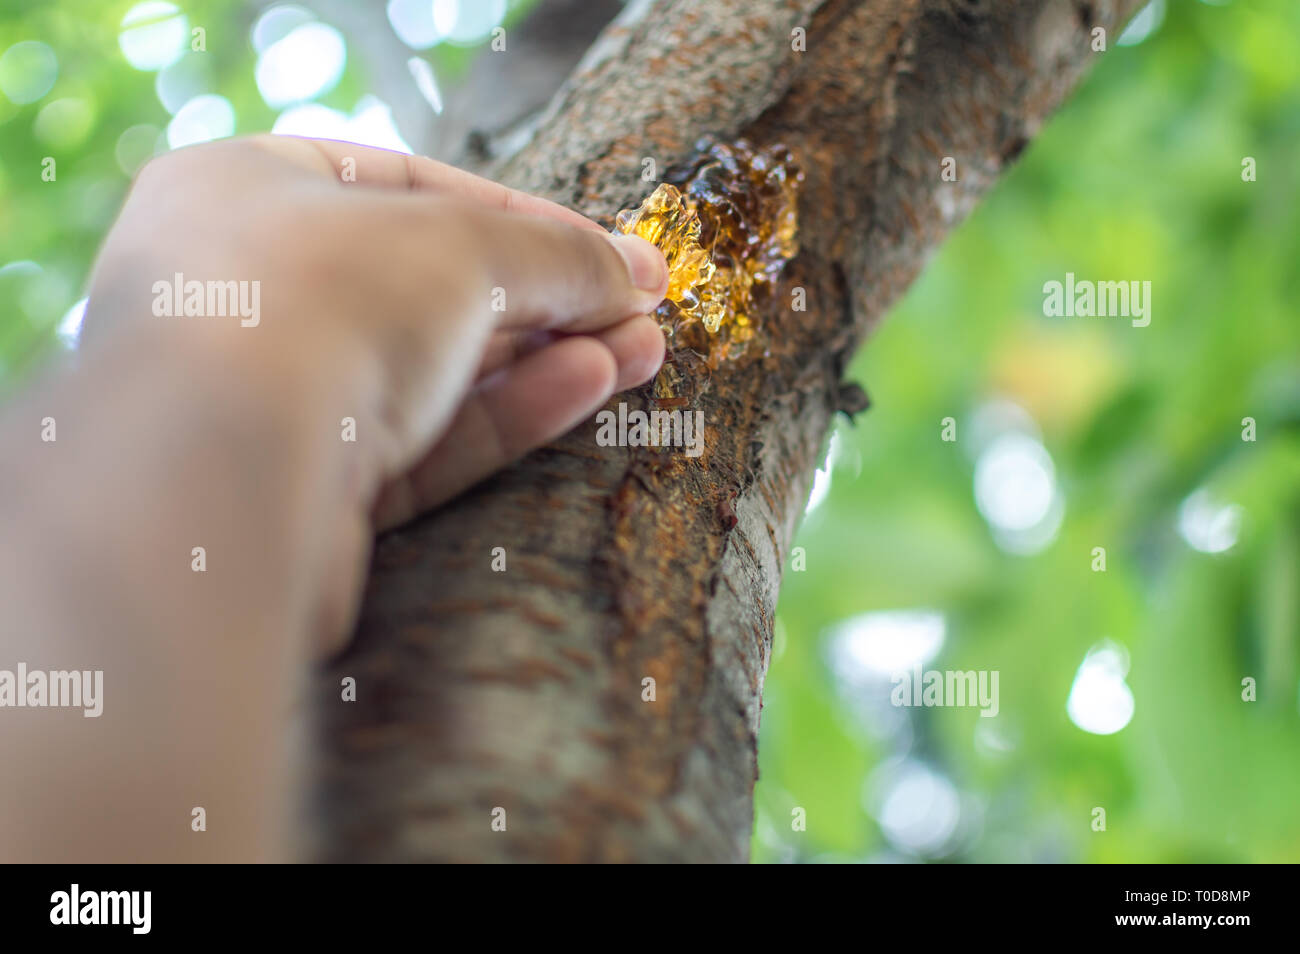 Eine Person zupfen Harzen Gummi sap aus der Rinde eines cherry tree Stockfoto